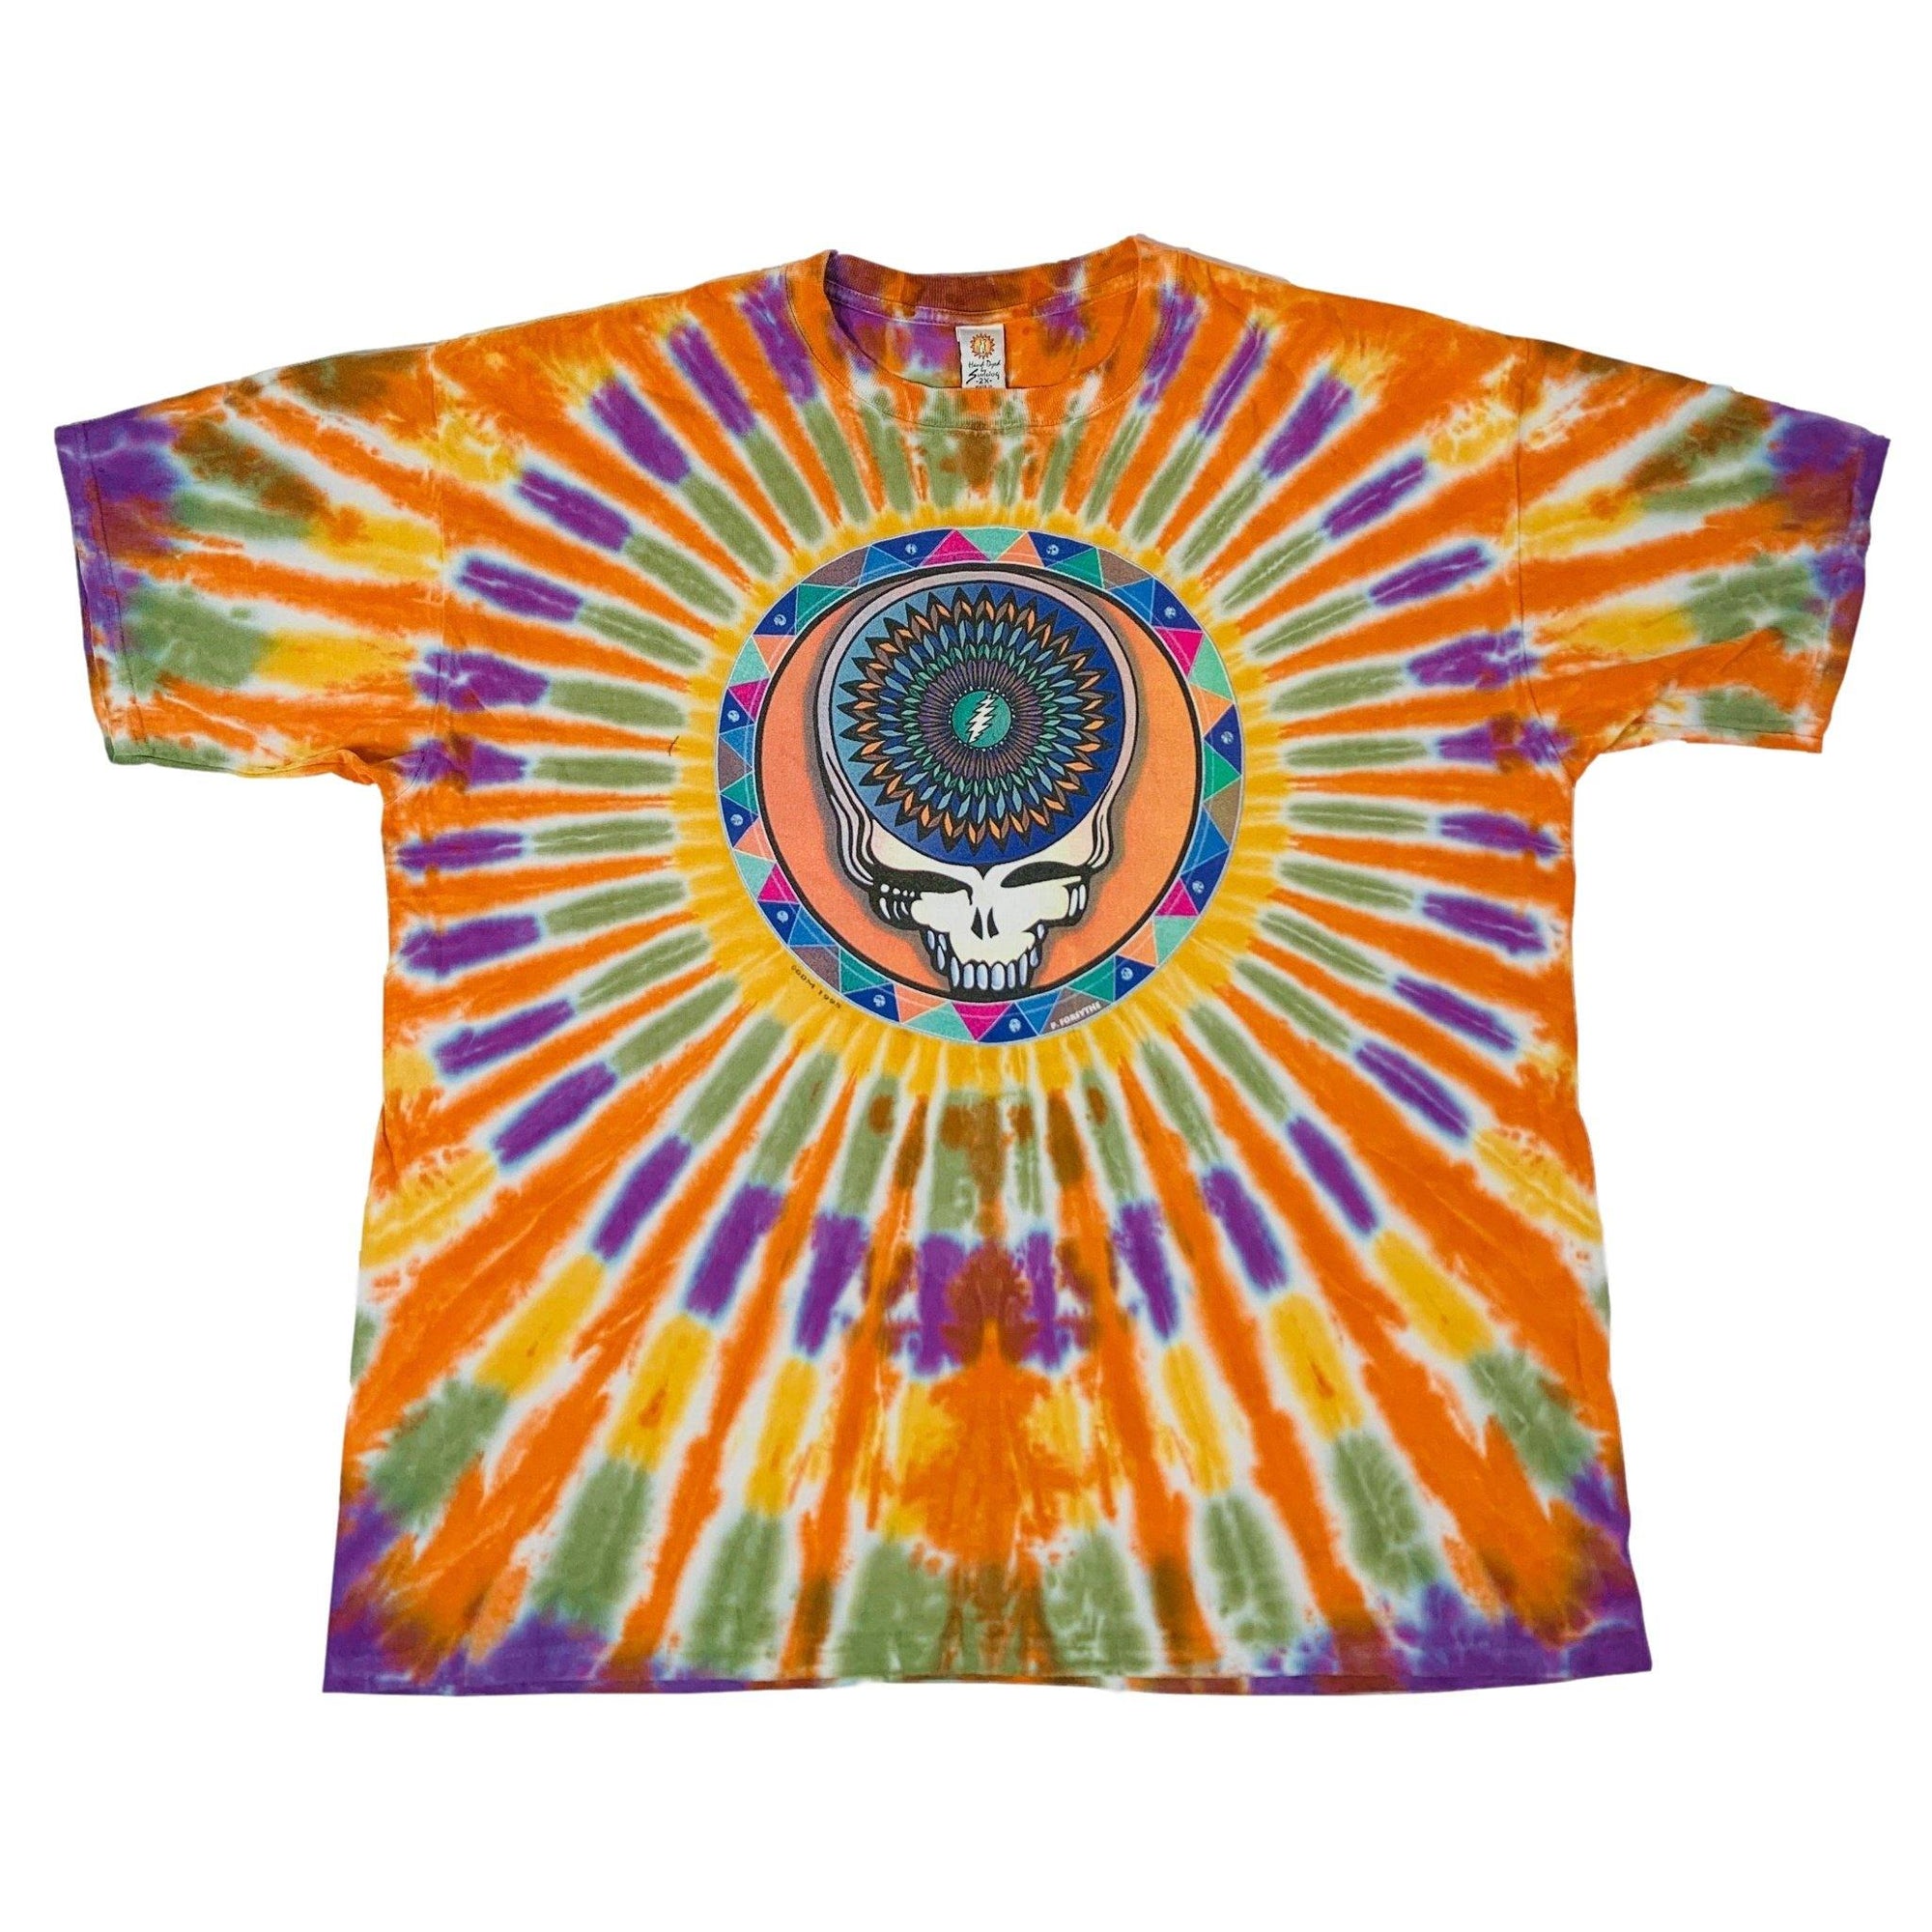 Vintage Grateful Dead "Dead Head" Tye-Dye T-Shirt - jointcustodydc